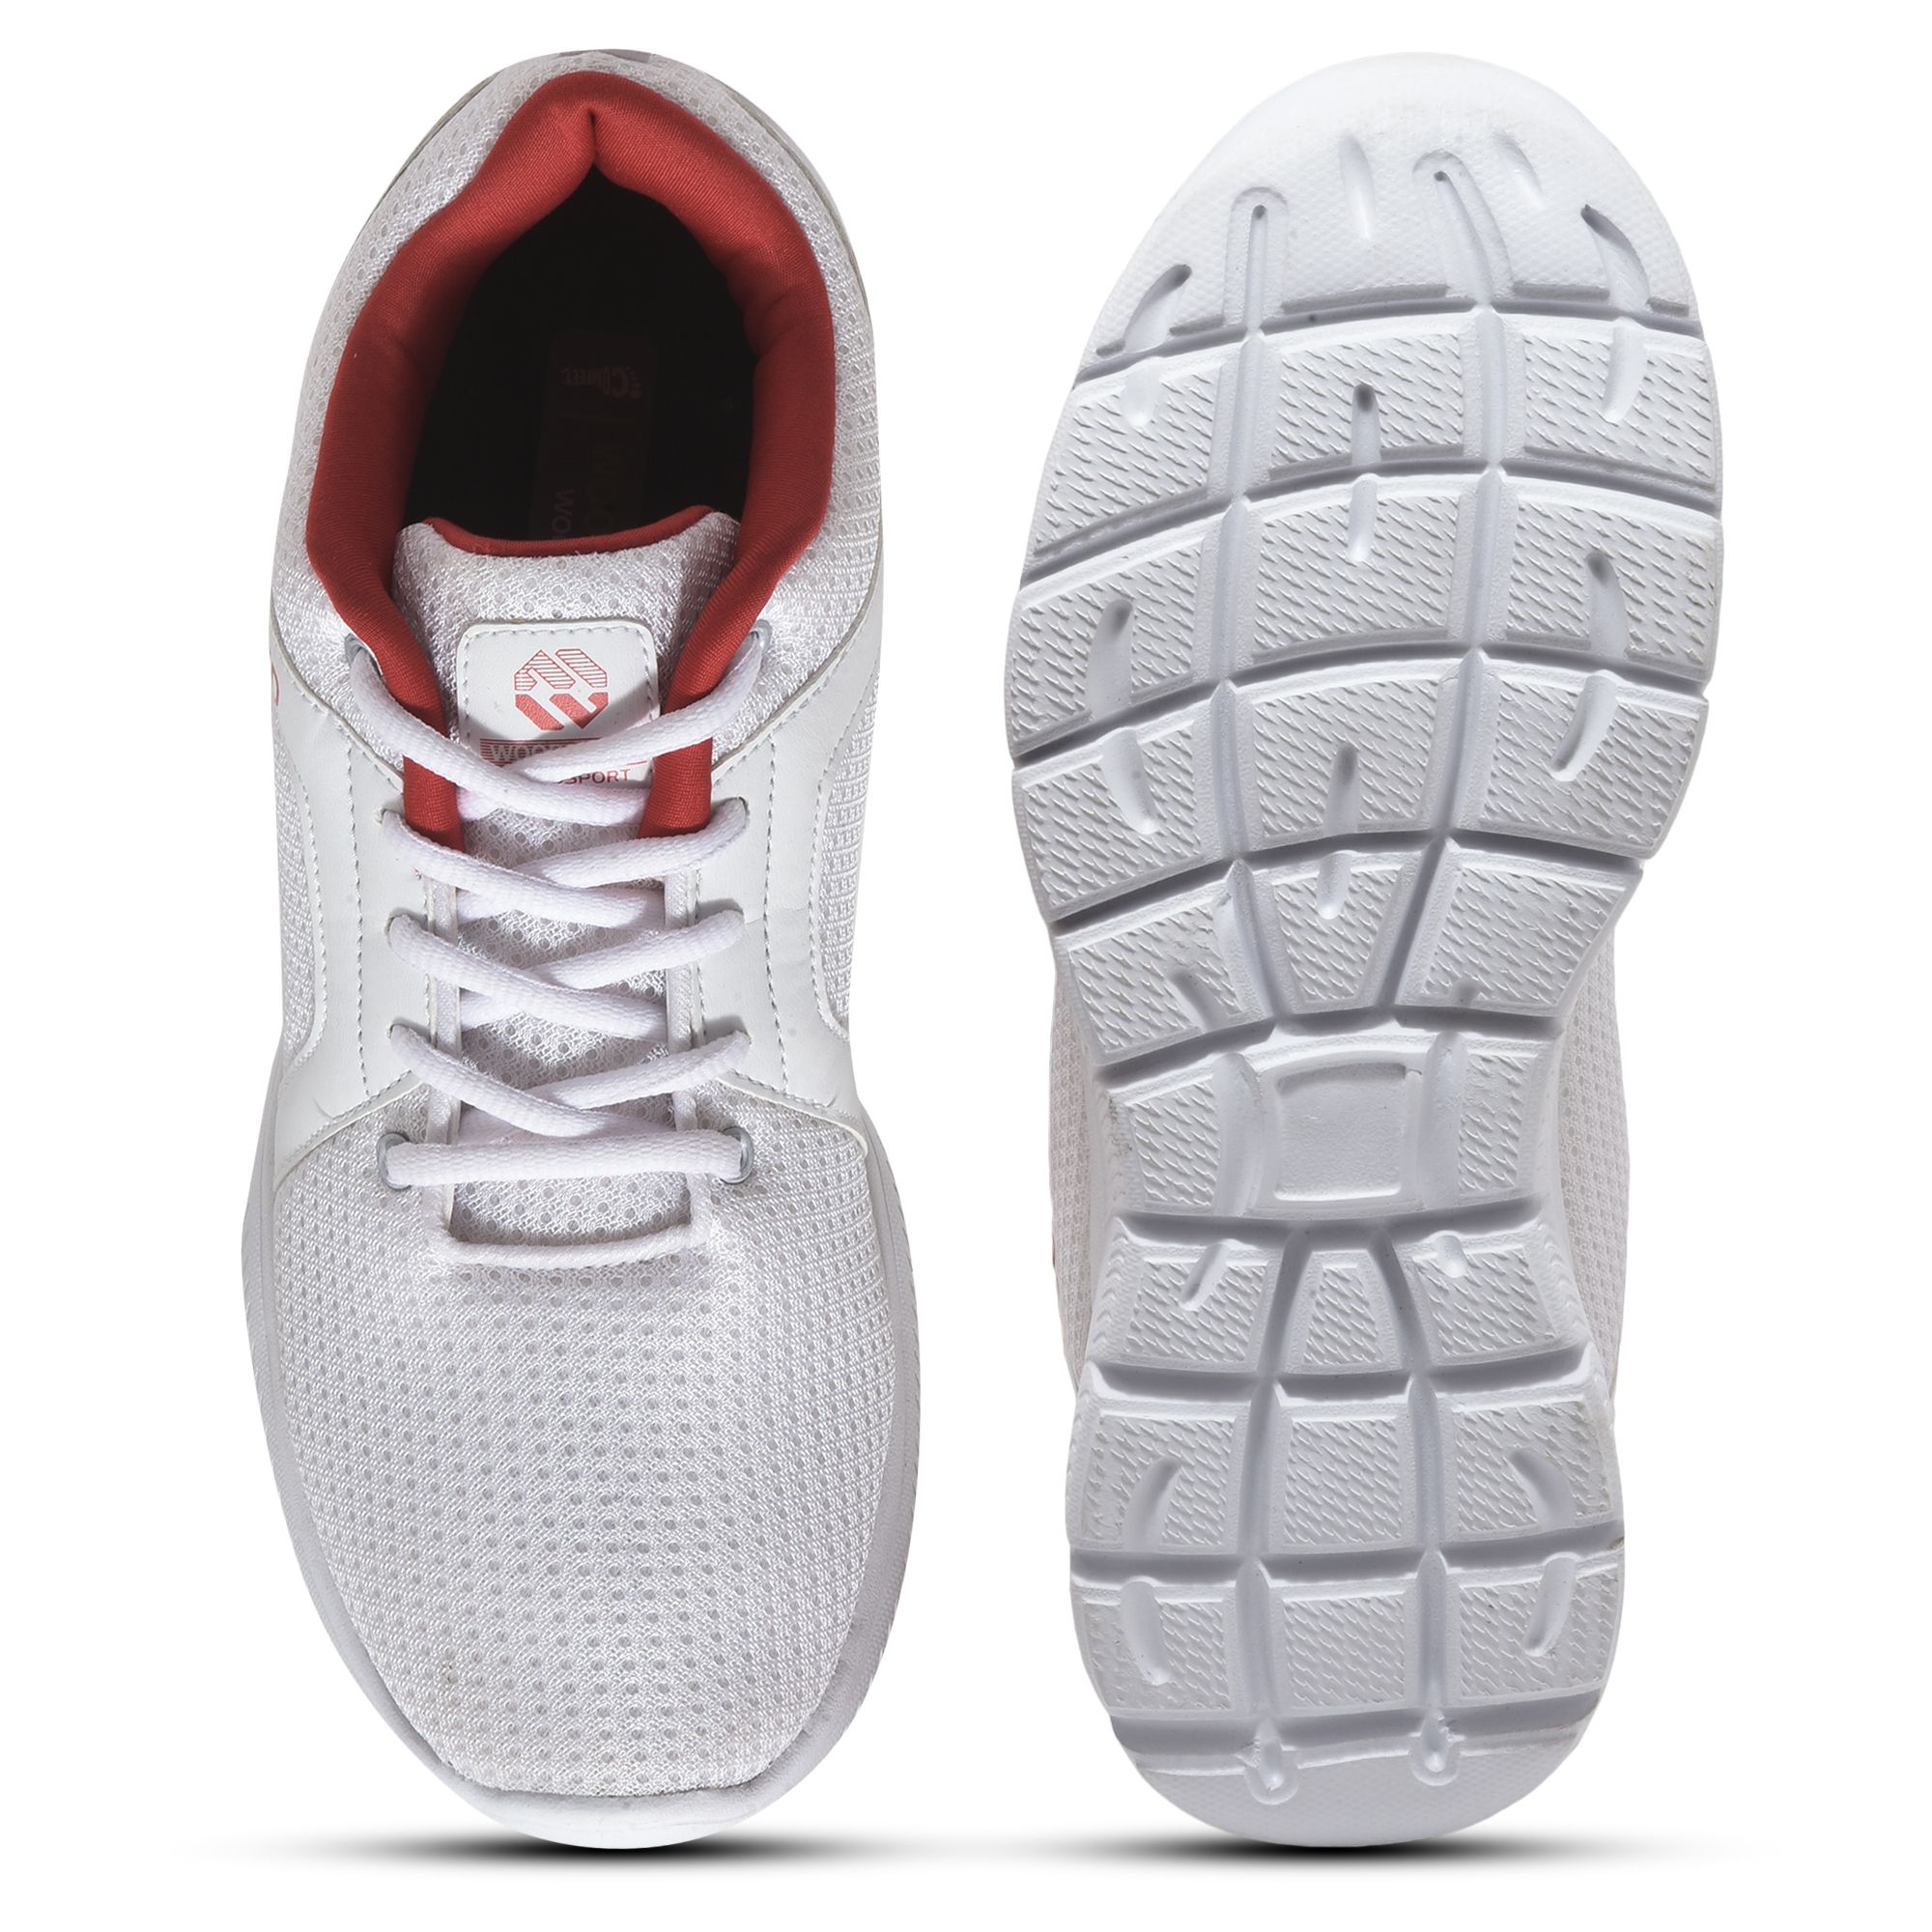 White sneakers for Men